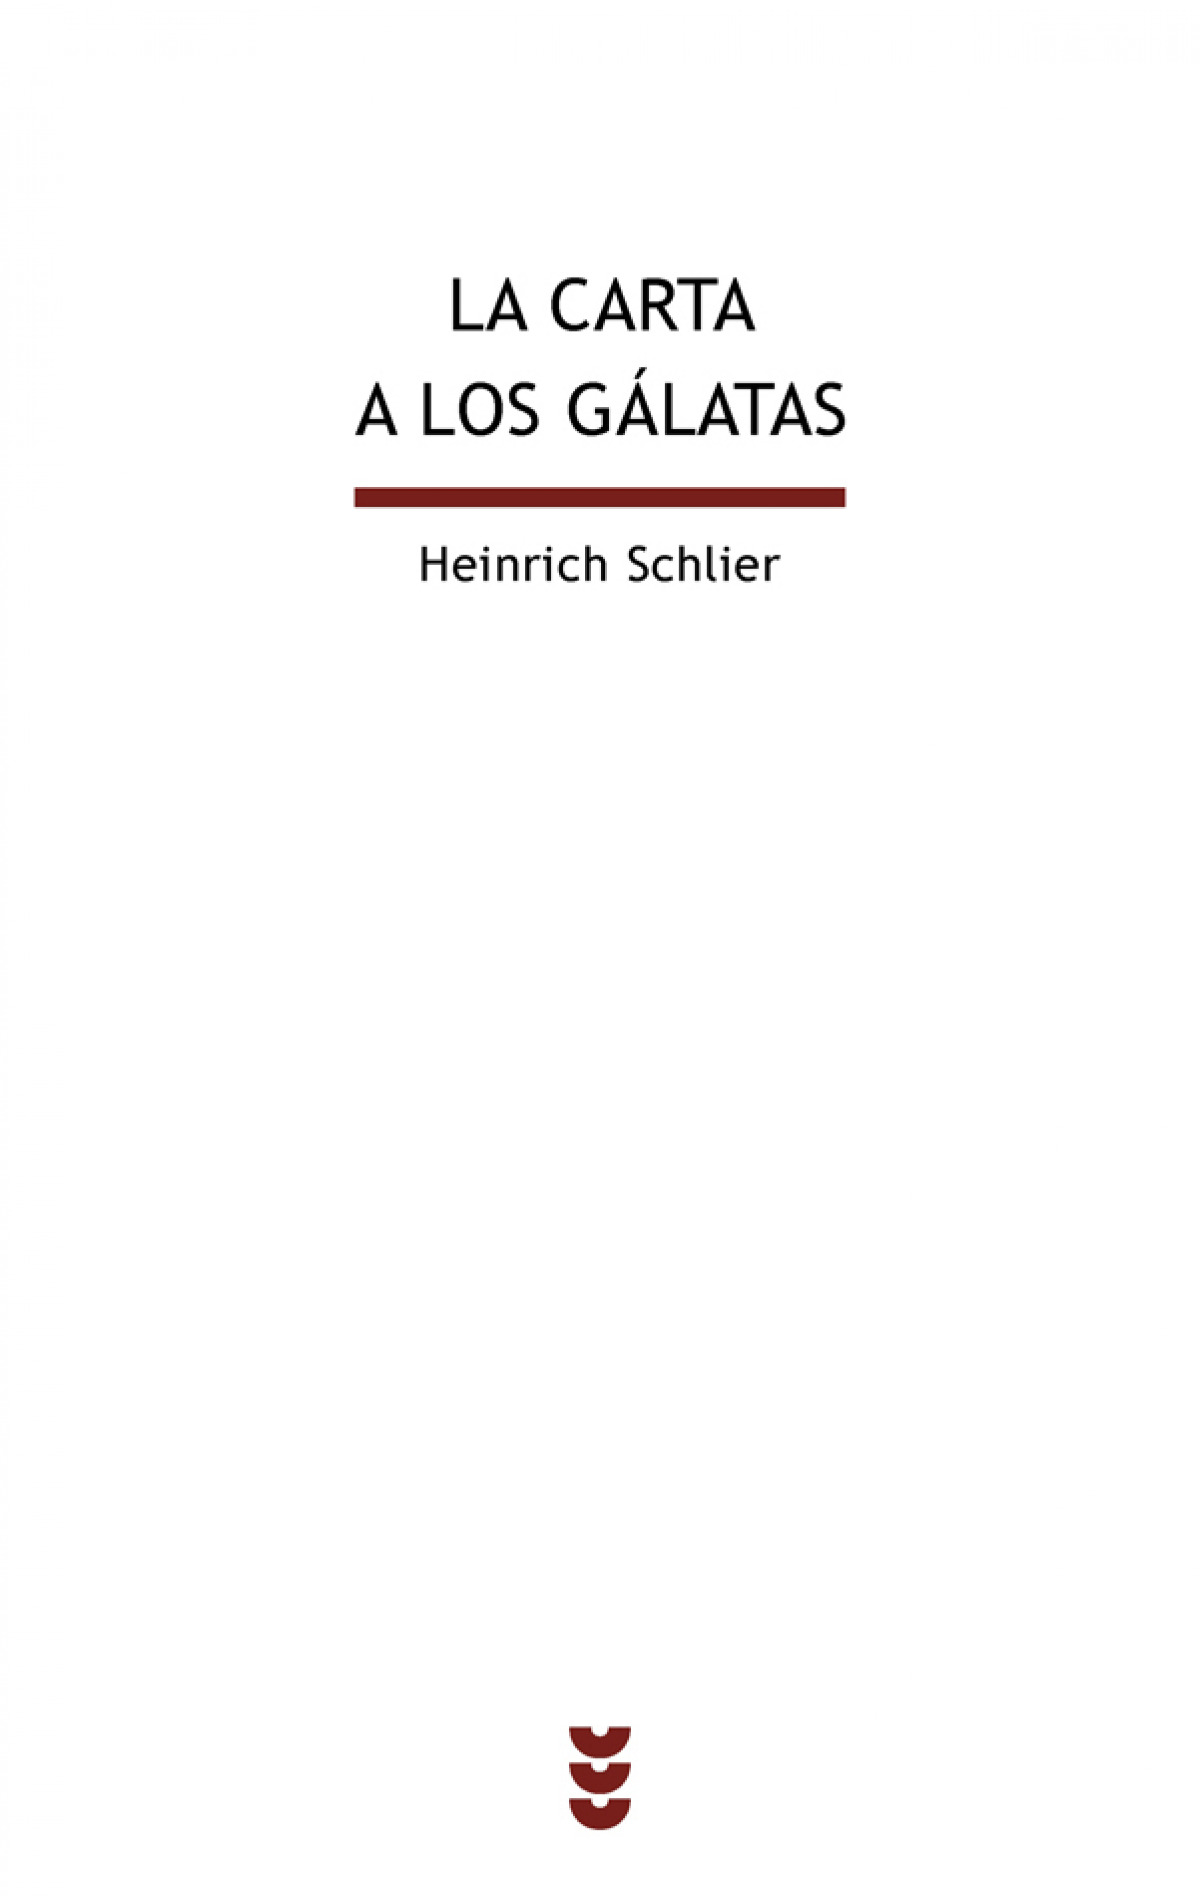 La carta a los gálatas - Heinrich Schlier